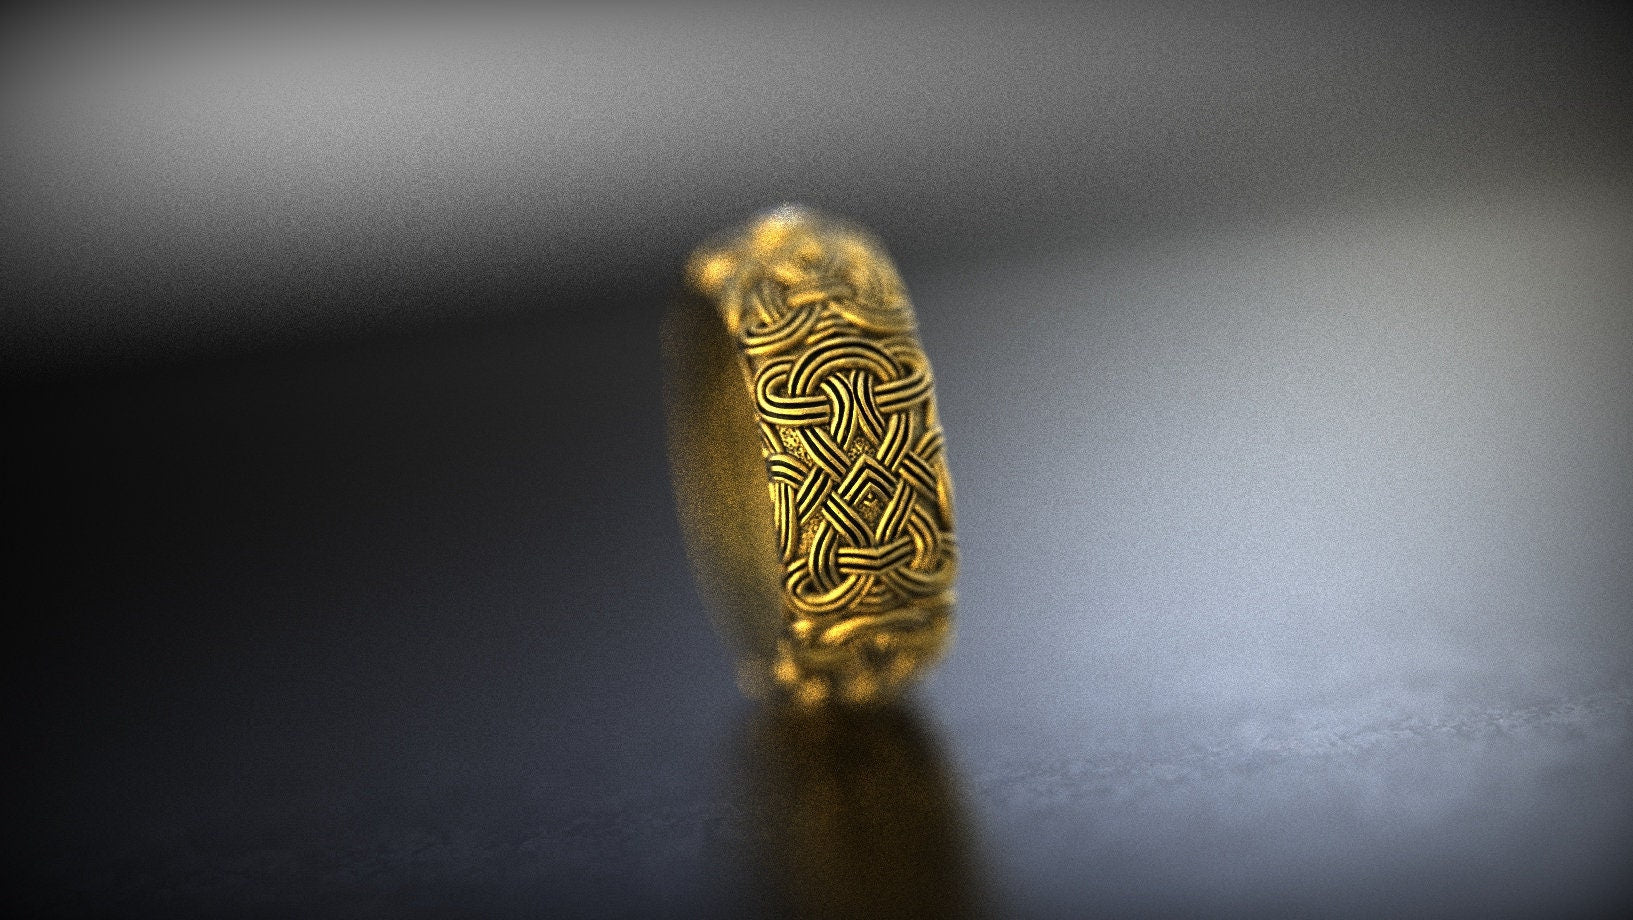 14K Gold Celtic Knot Ring